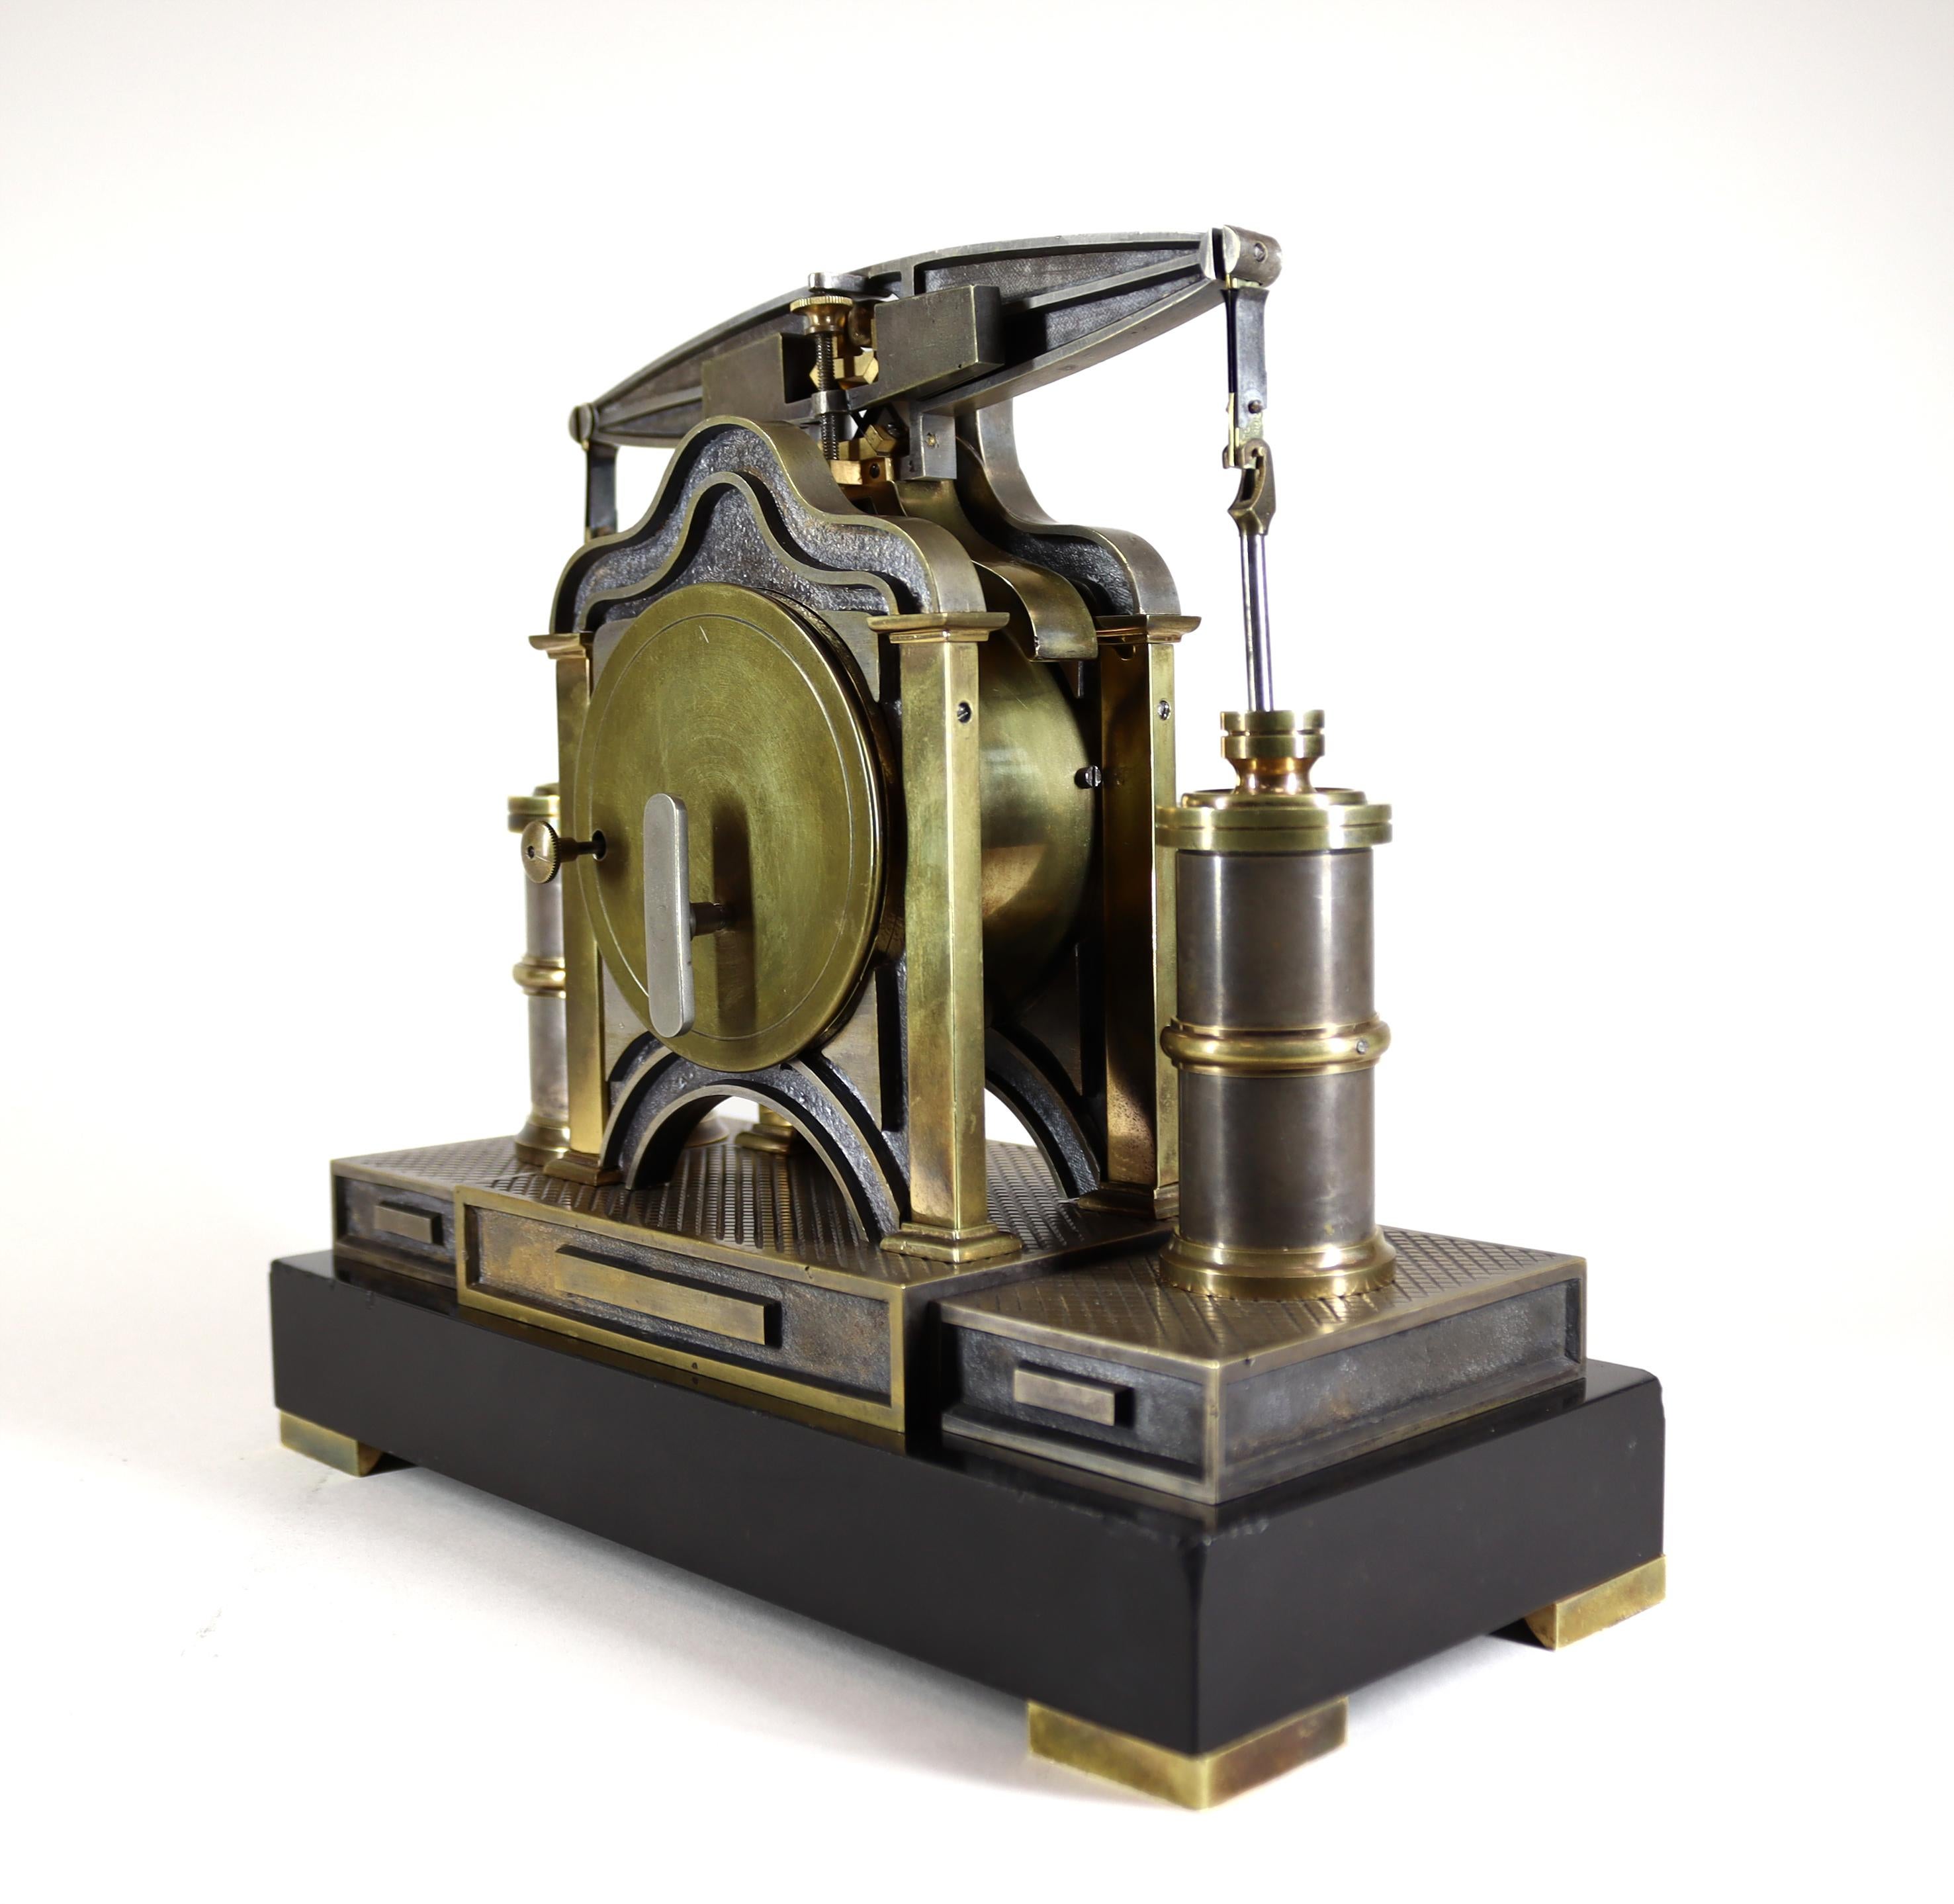 Eine neuartige Kaminsimsuhr in Form einer industriellen Balkenmaschine von Andre Romain Guilmet aus der Zeit um 1878, nummeriert 196 und signiert von Giulmet.

Das achttägige Uhrwerk wird von einem Balken überragt, der den oberen Teil eines